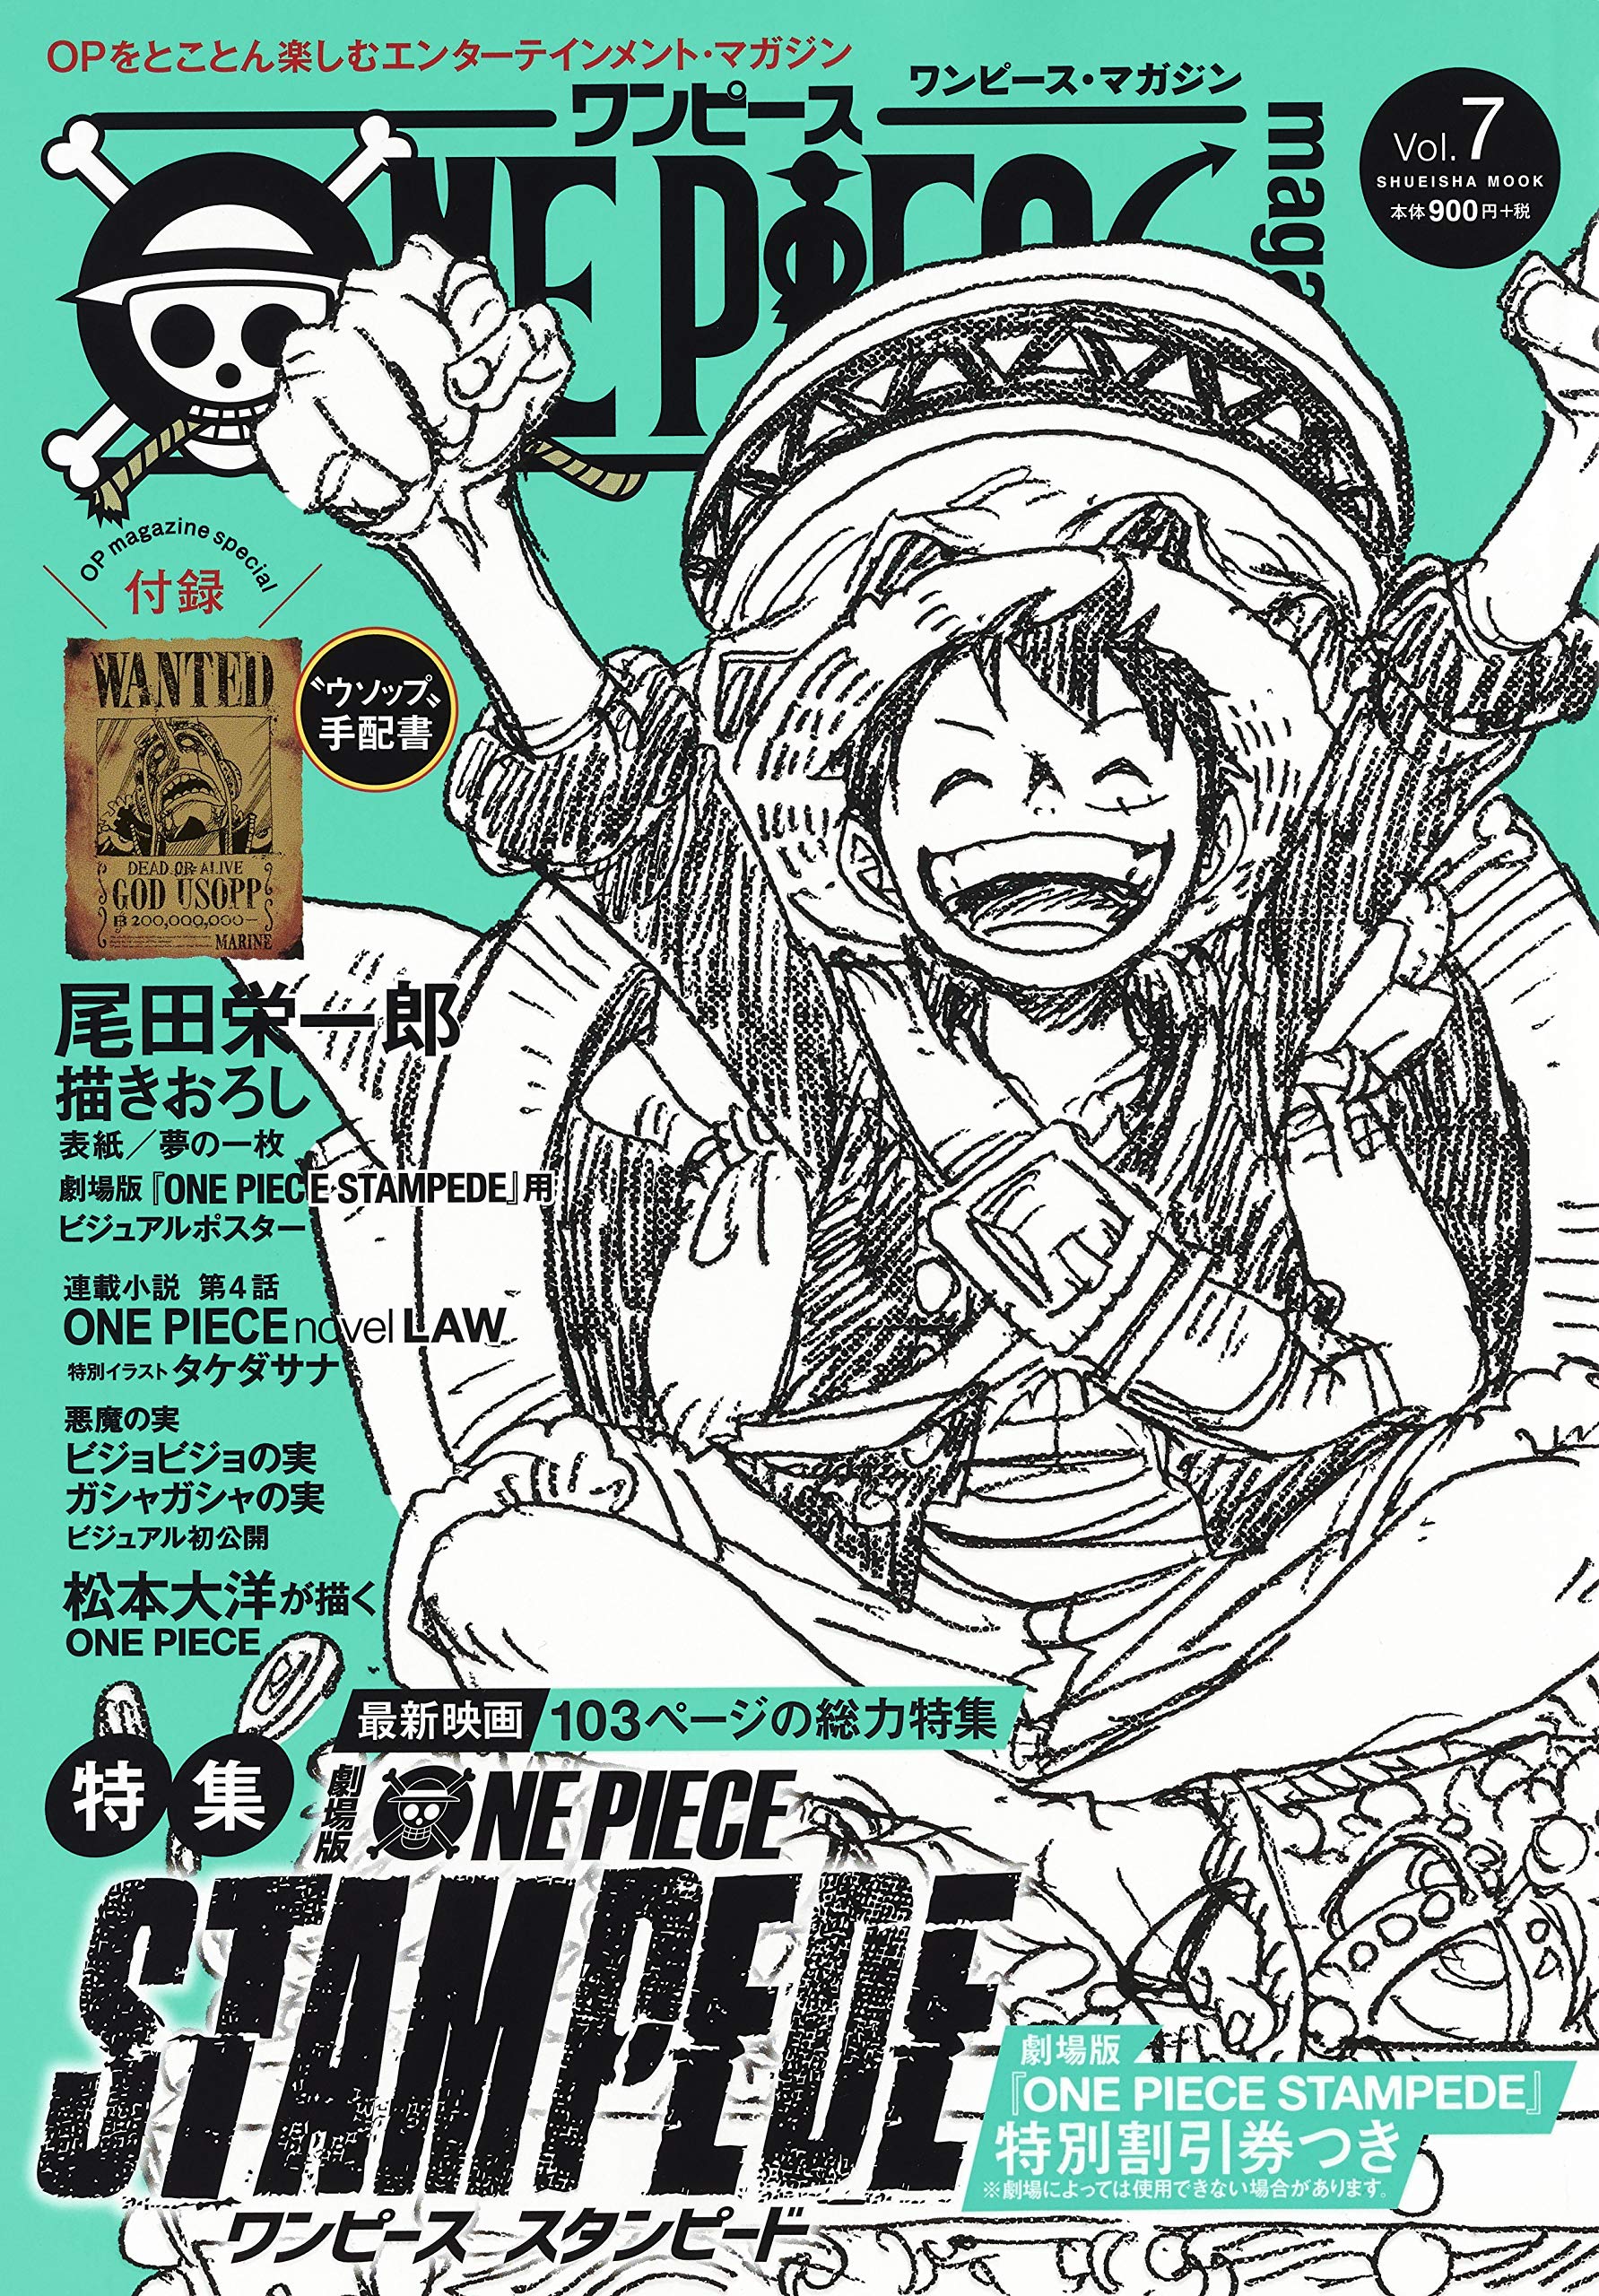 USED) Magazine One Piece Magazine (ONE PIECE magazine Vol.7 